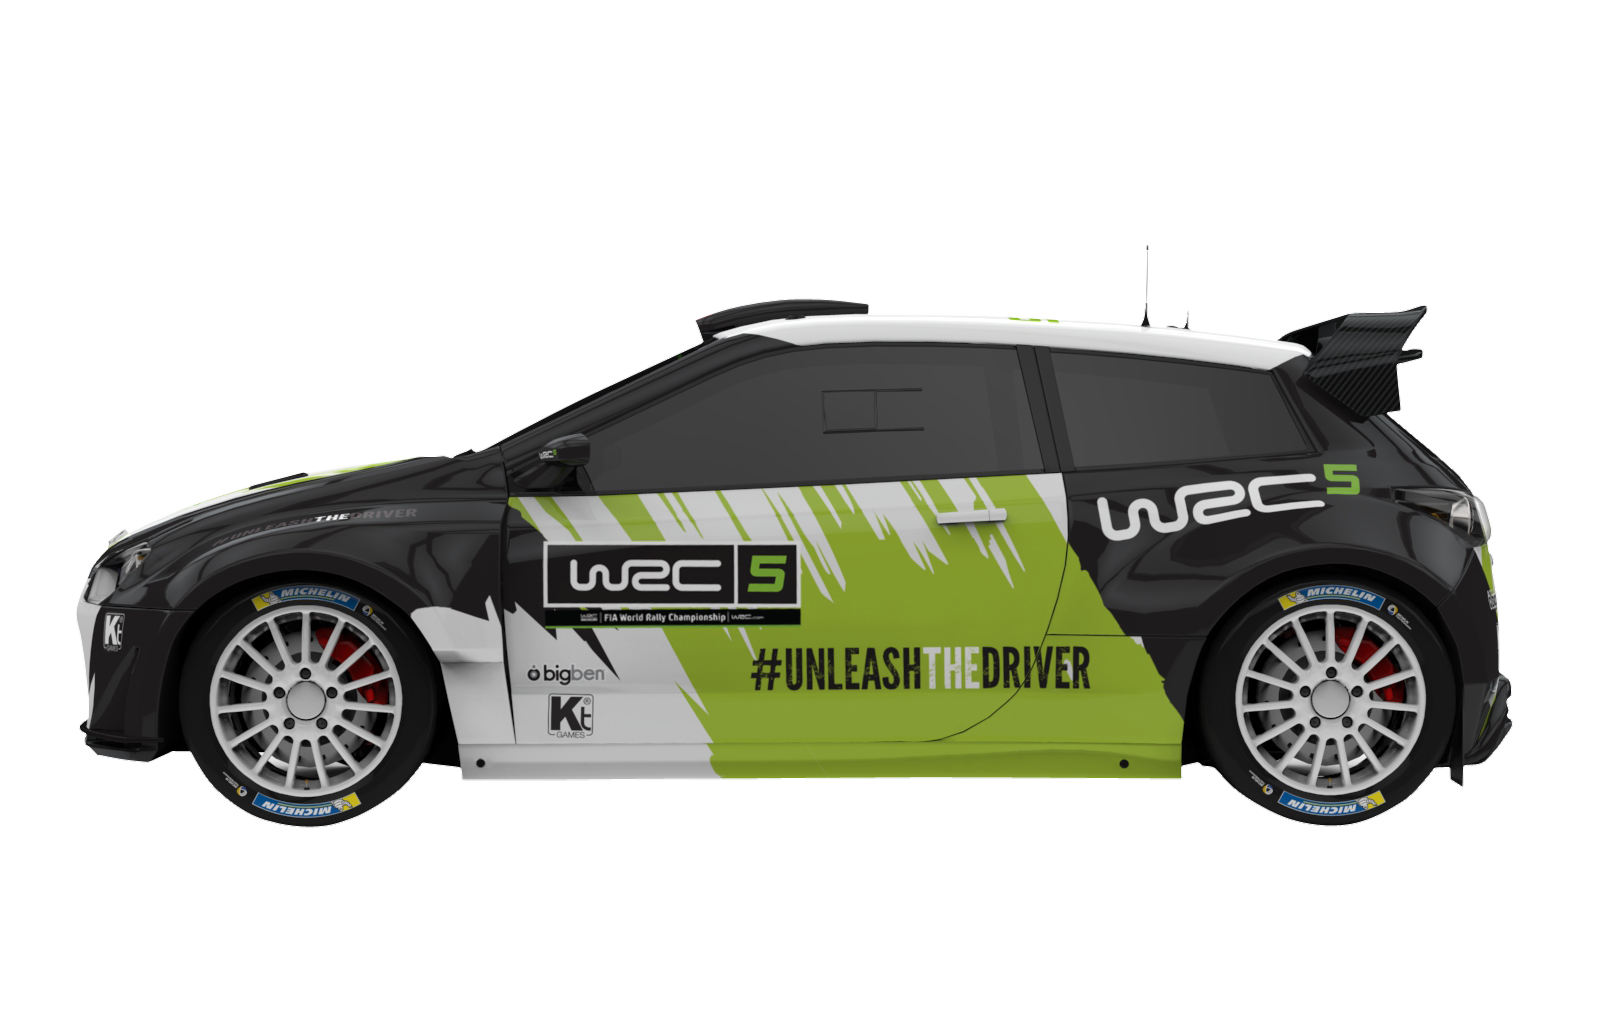 http://www.godisageek.com/wp-content/uploads/WRC5-WRC-Concept-Car-S-3.png